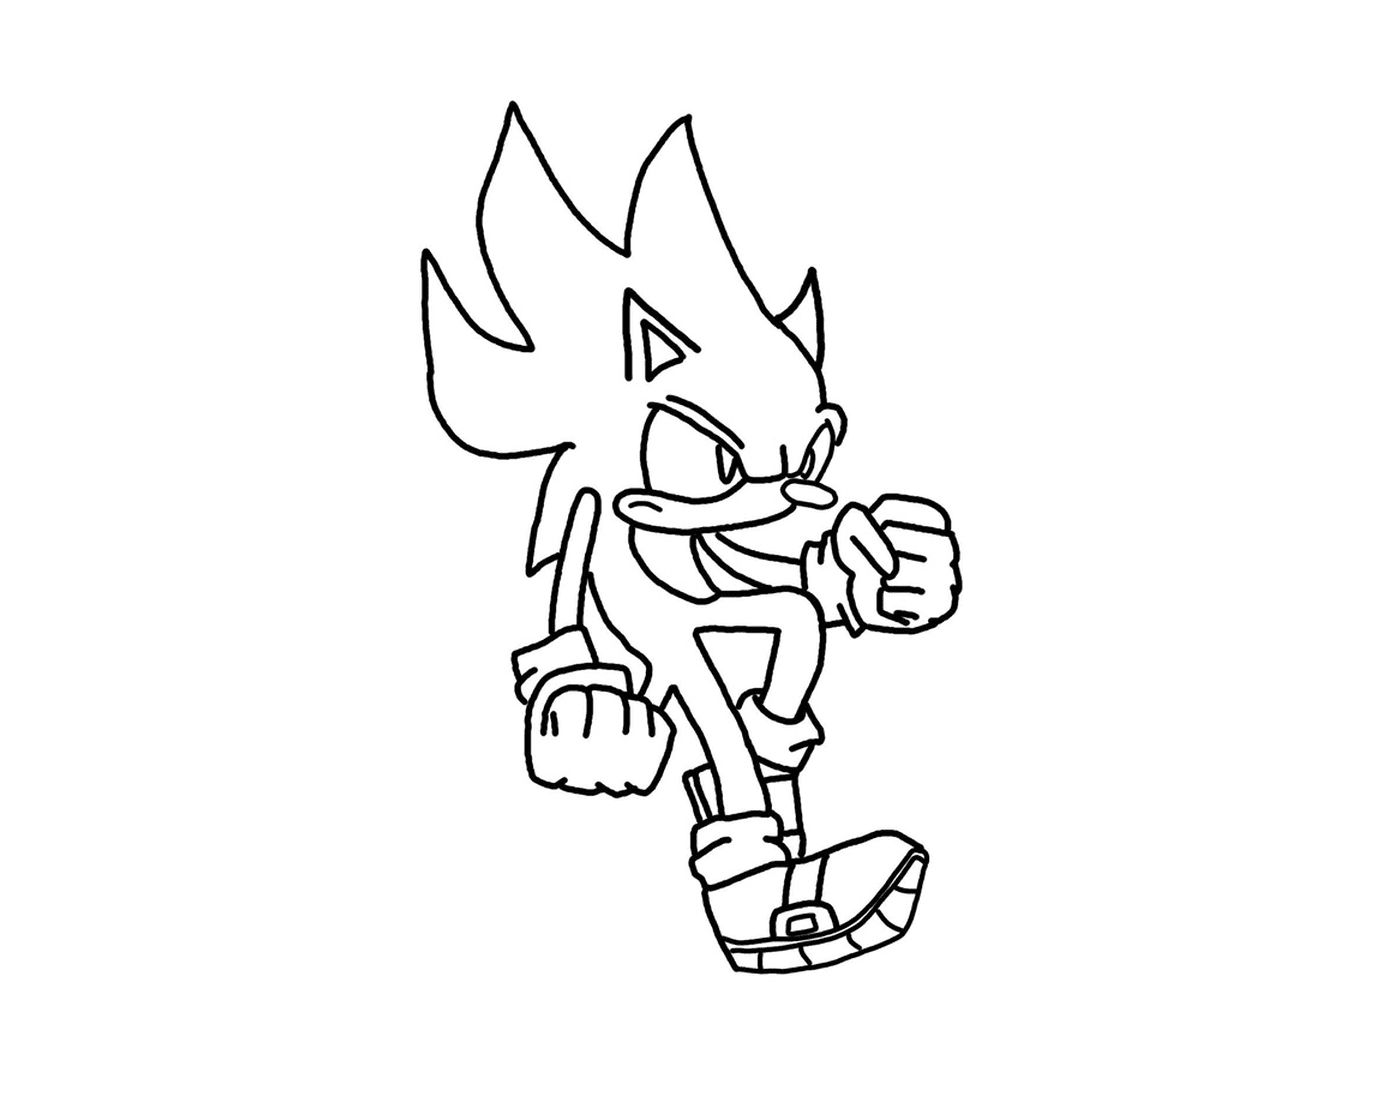  Sonic em movimento 